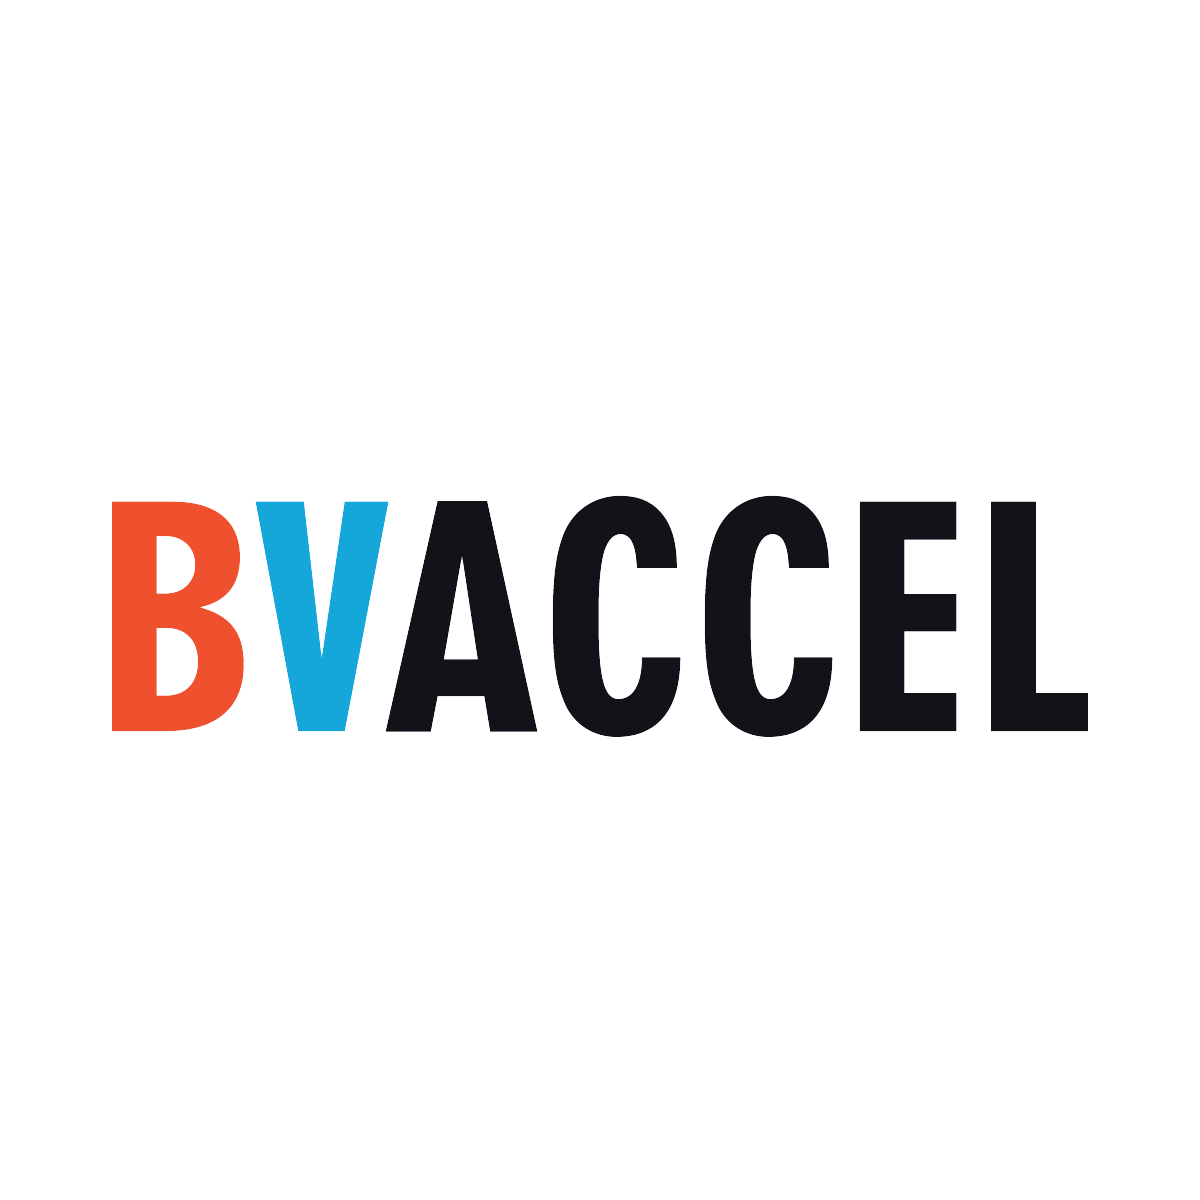 Bench Logo - Brand Value Accelerator the BVA Bench!